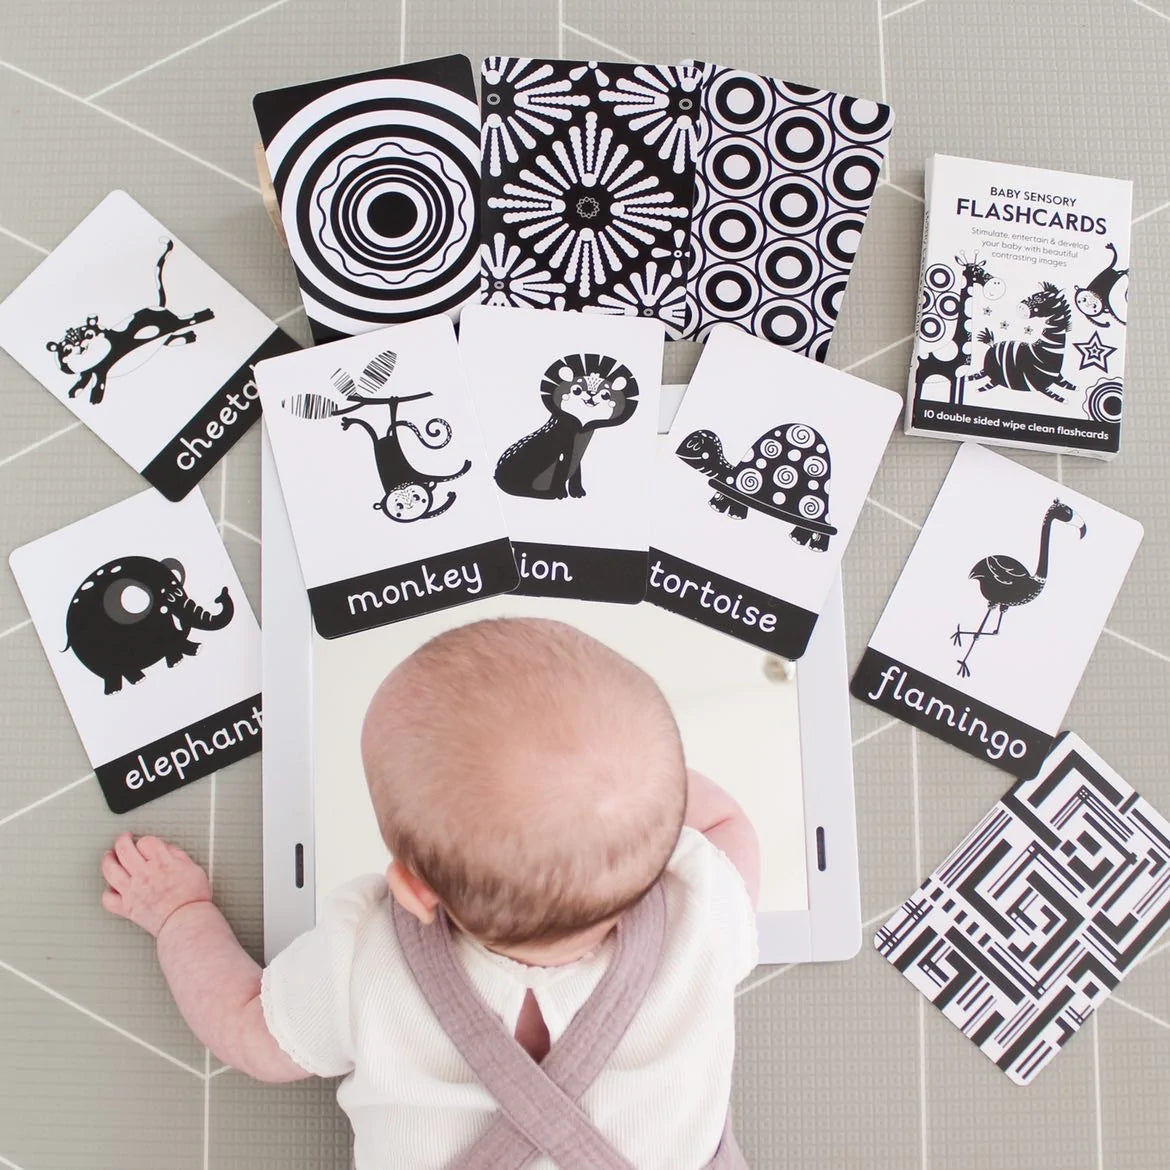 Baby Sensory Flashcards